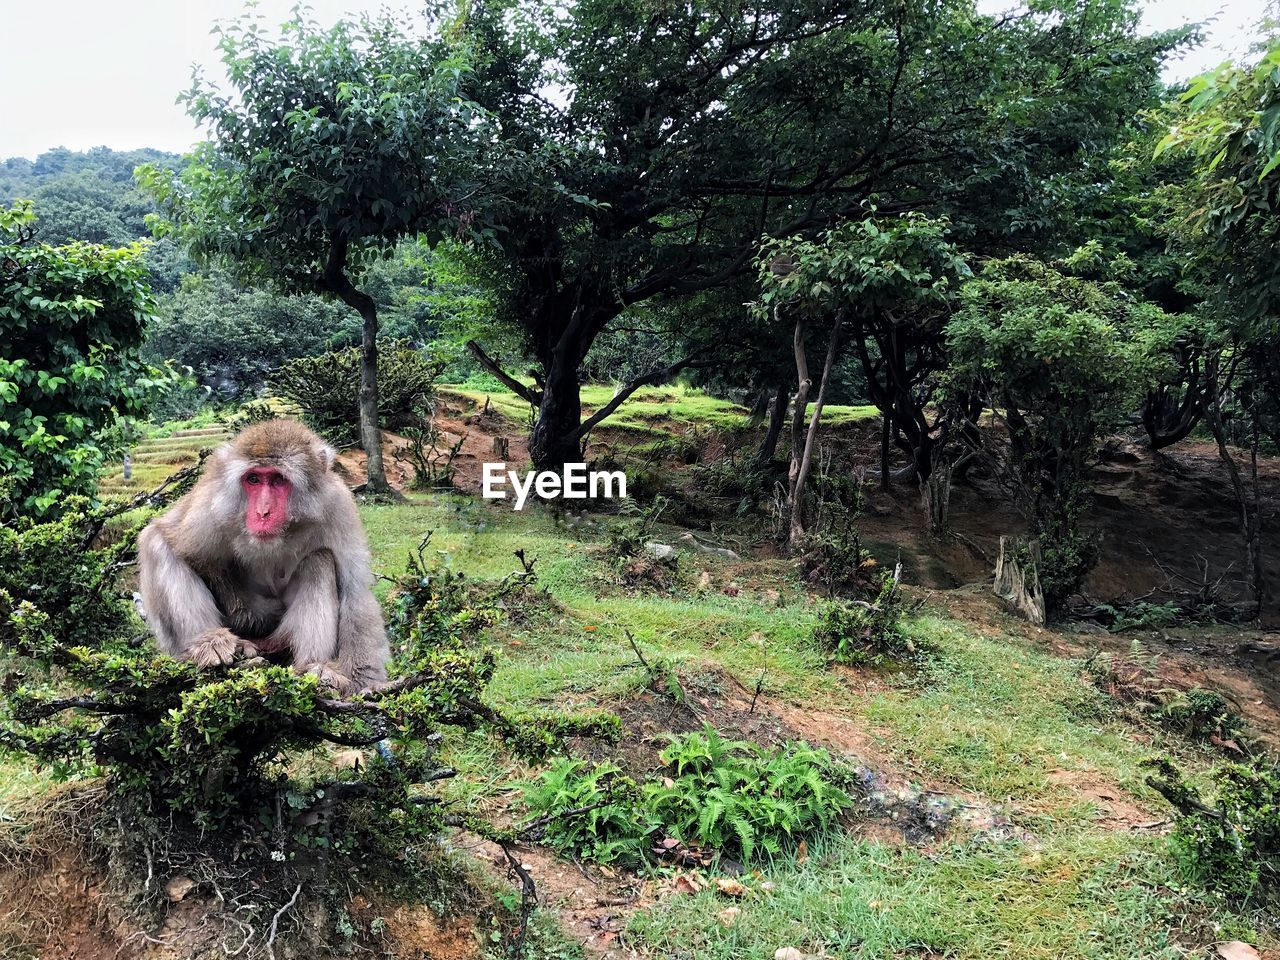 Monkey in japan 